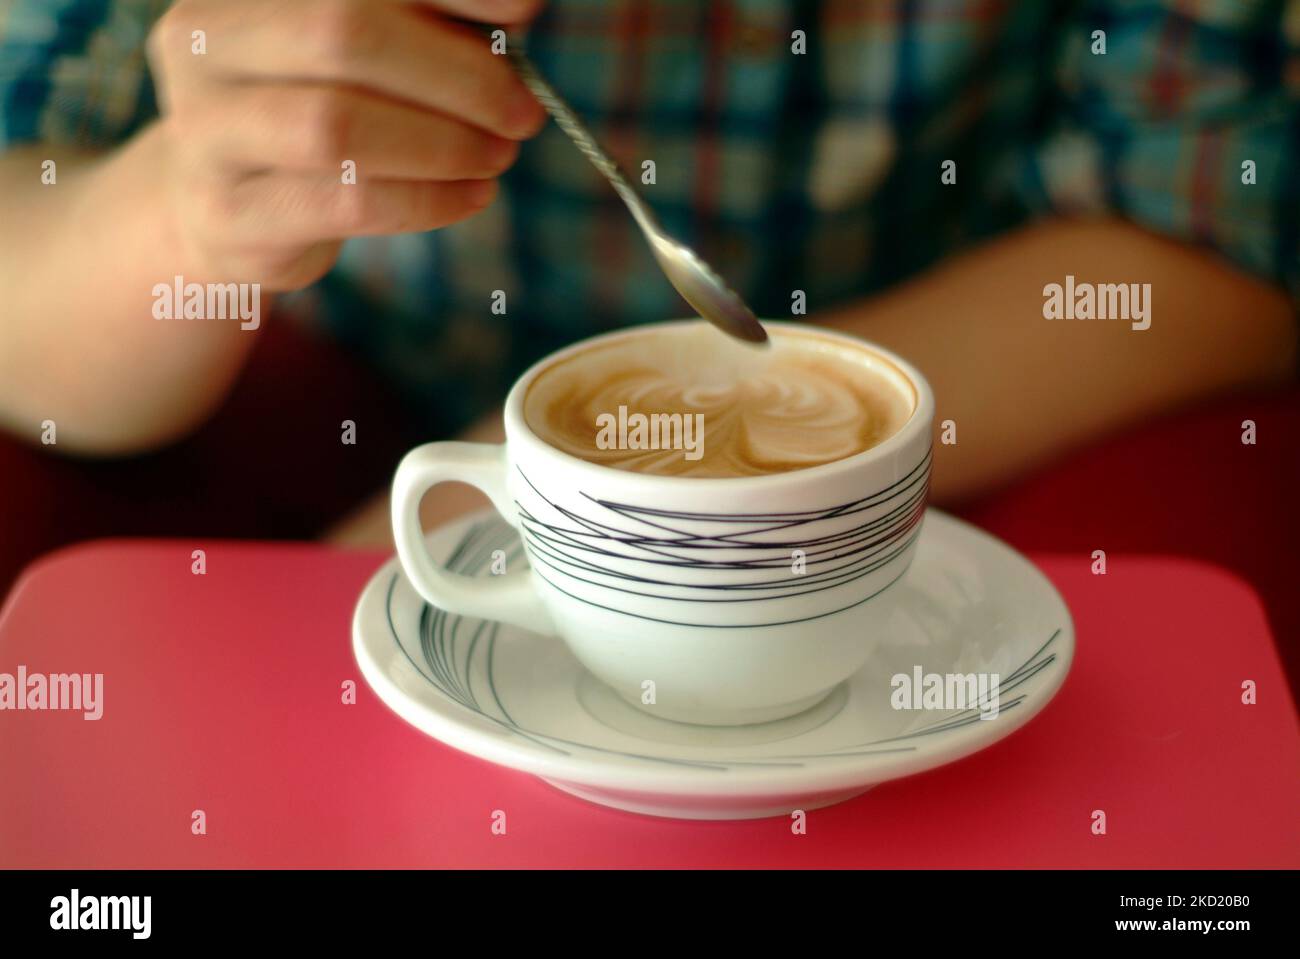 Un primer plano del cappuccino de bonito diseño en una taza blanca con una persona sujetando una cuchara por encima Foto de stock